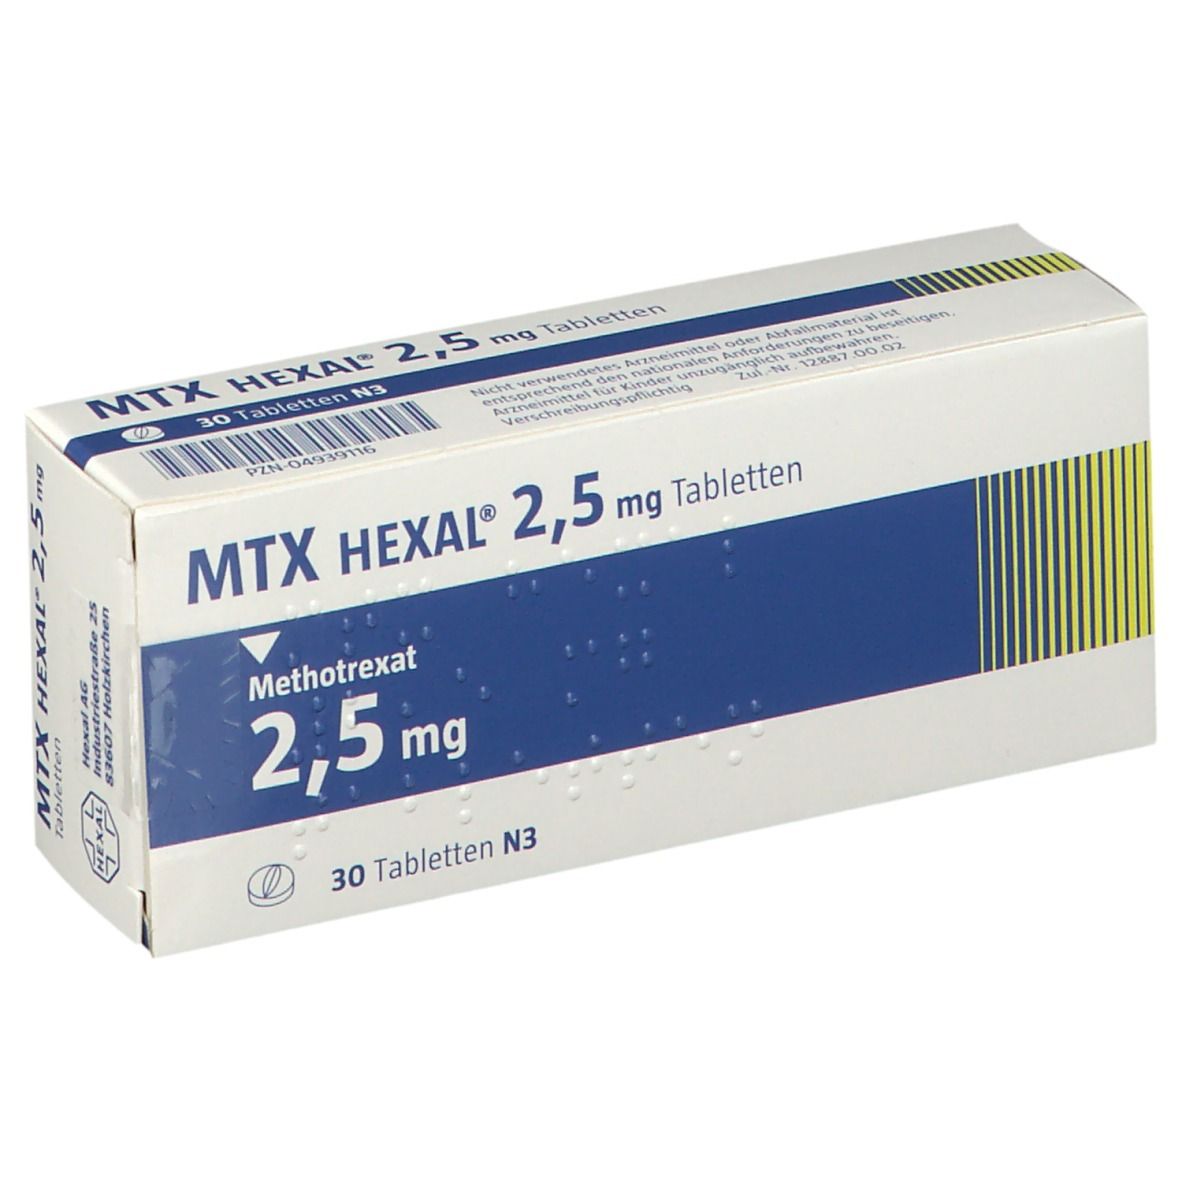 MTX HEXAL® 2,5 mg